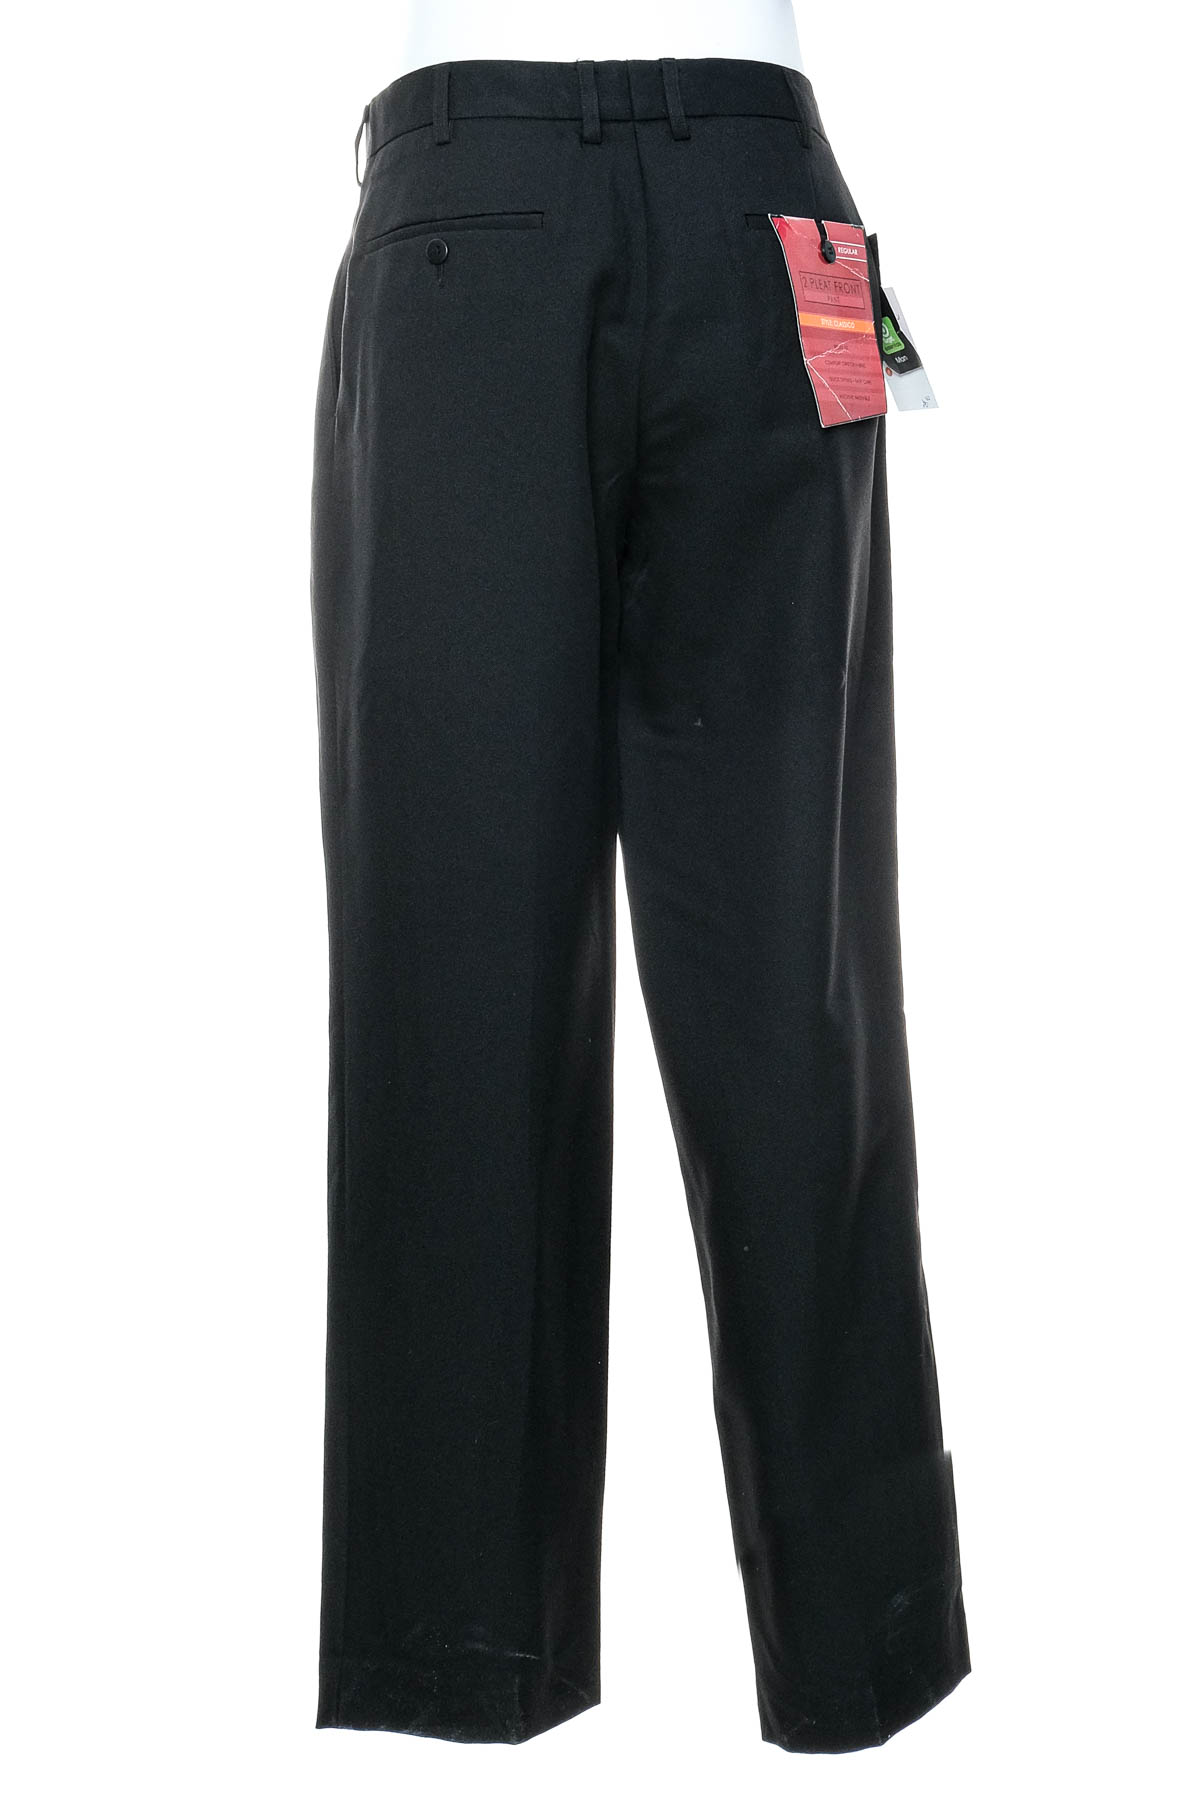 Men's trousers - Target - 1